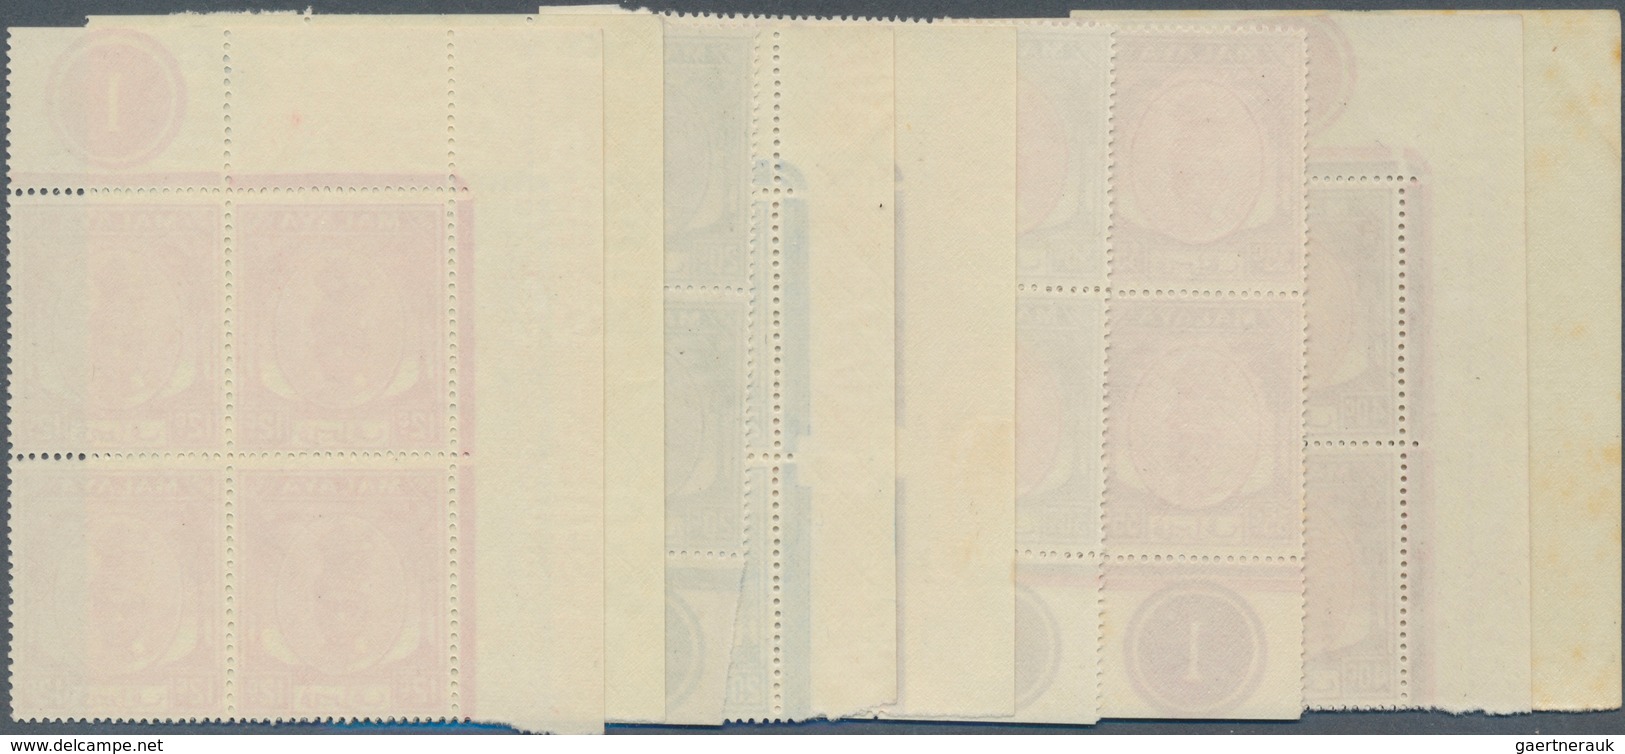 06805 Malaiische Staaten - Perak: 1950/1956, Sultan Yussuf Izzuddin Shah 22 Different Stamps Incl. Shades - Perak